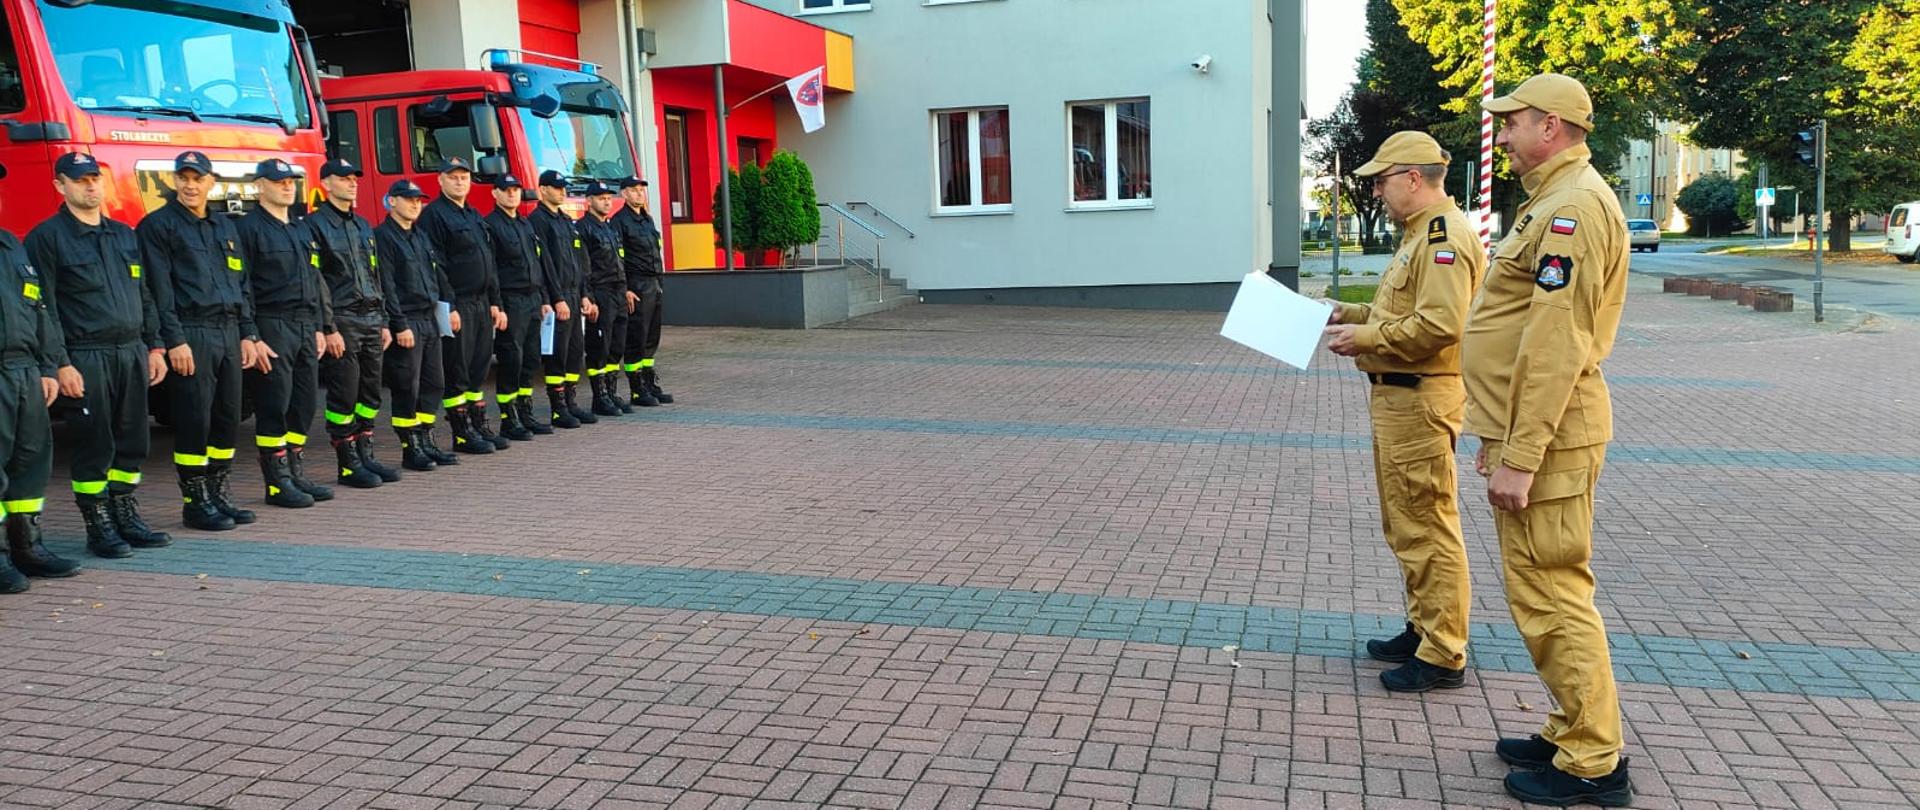 Mężczyzna w piaskowym mundurze odczytuje gratulacje przed grupą strażaków